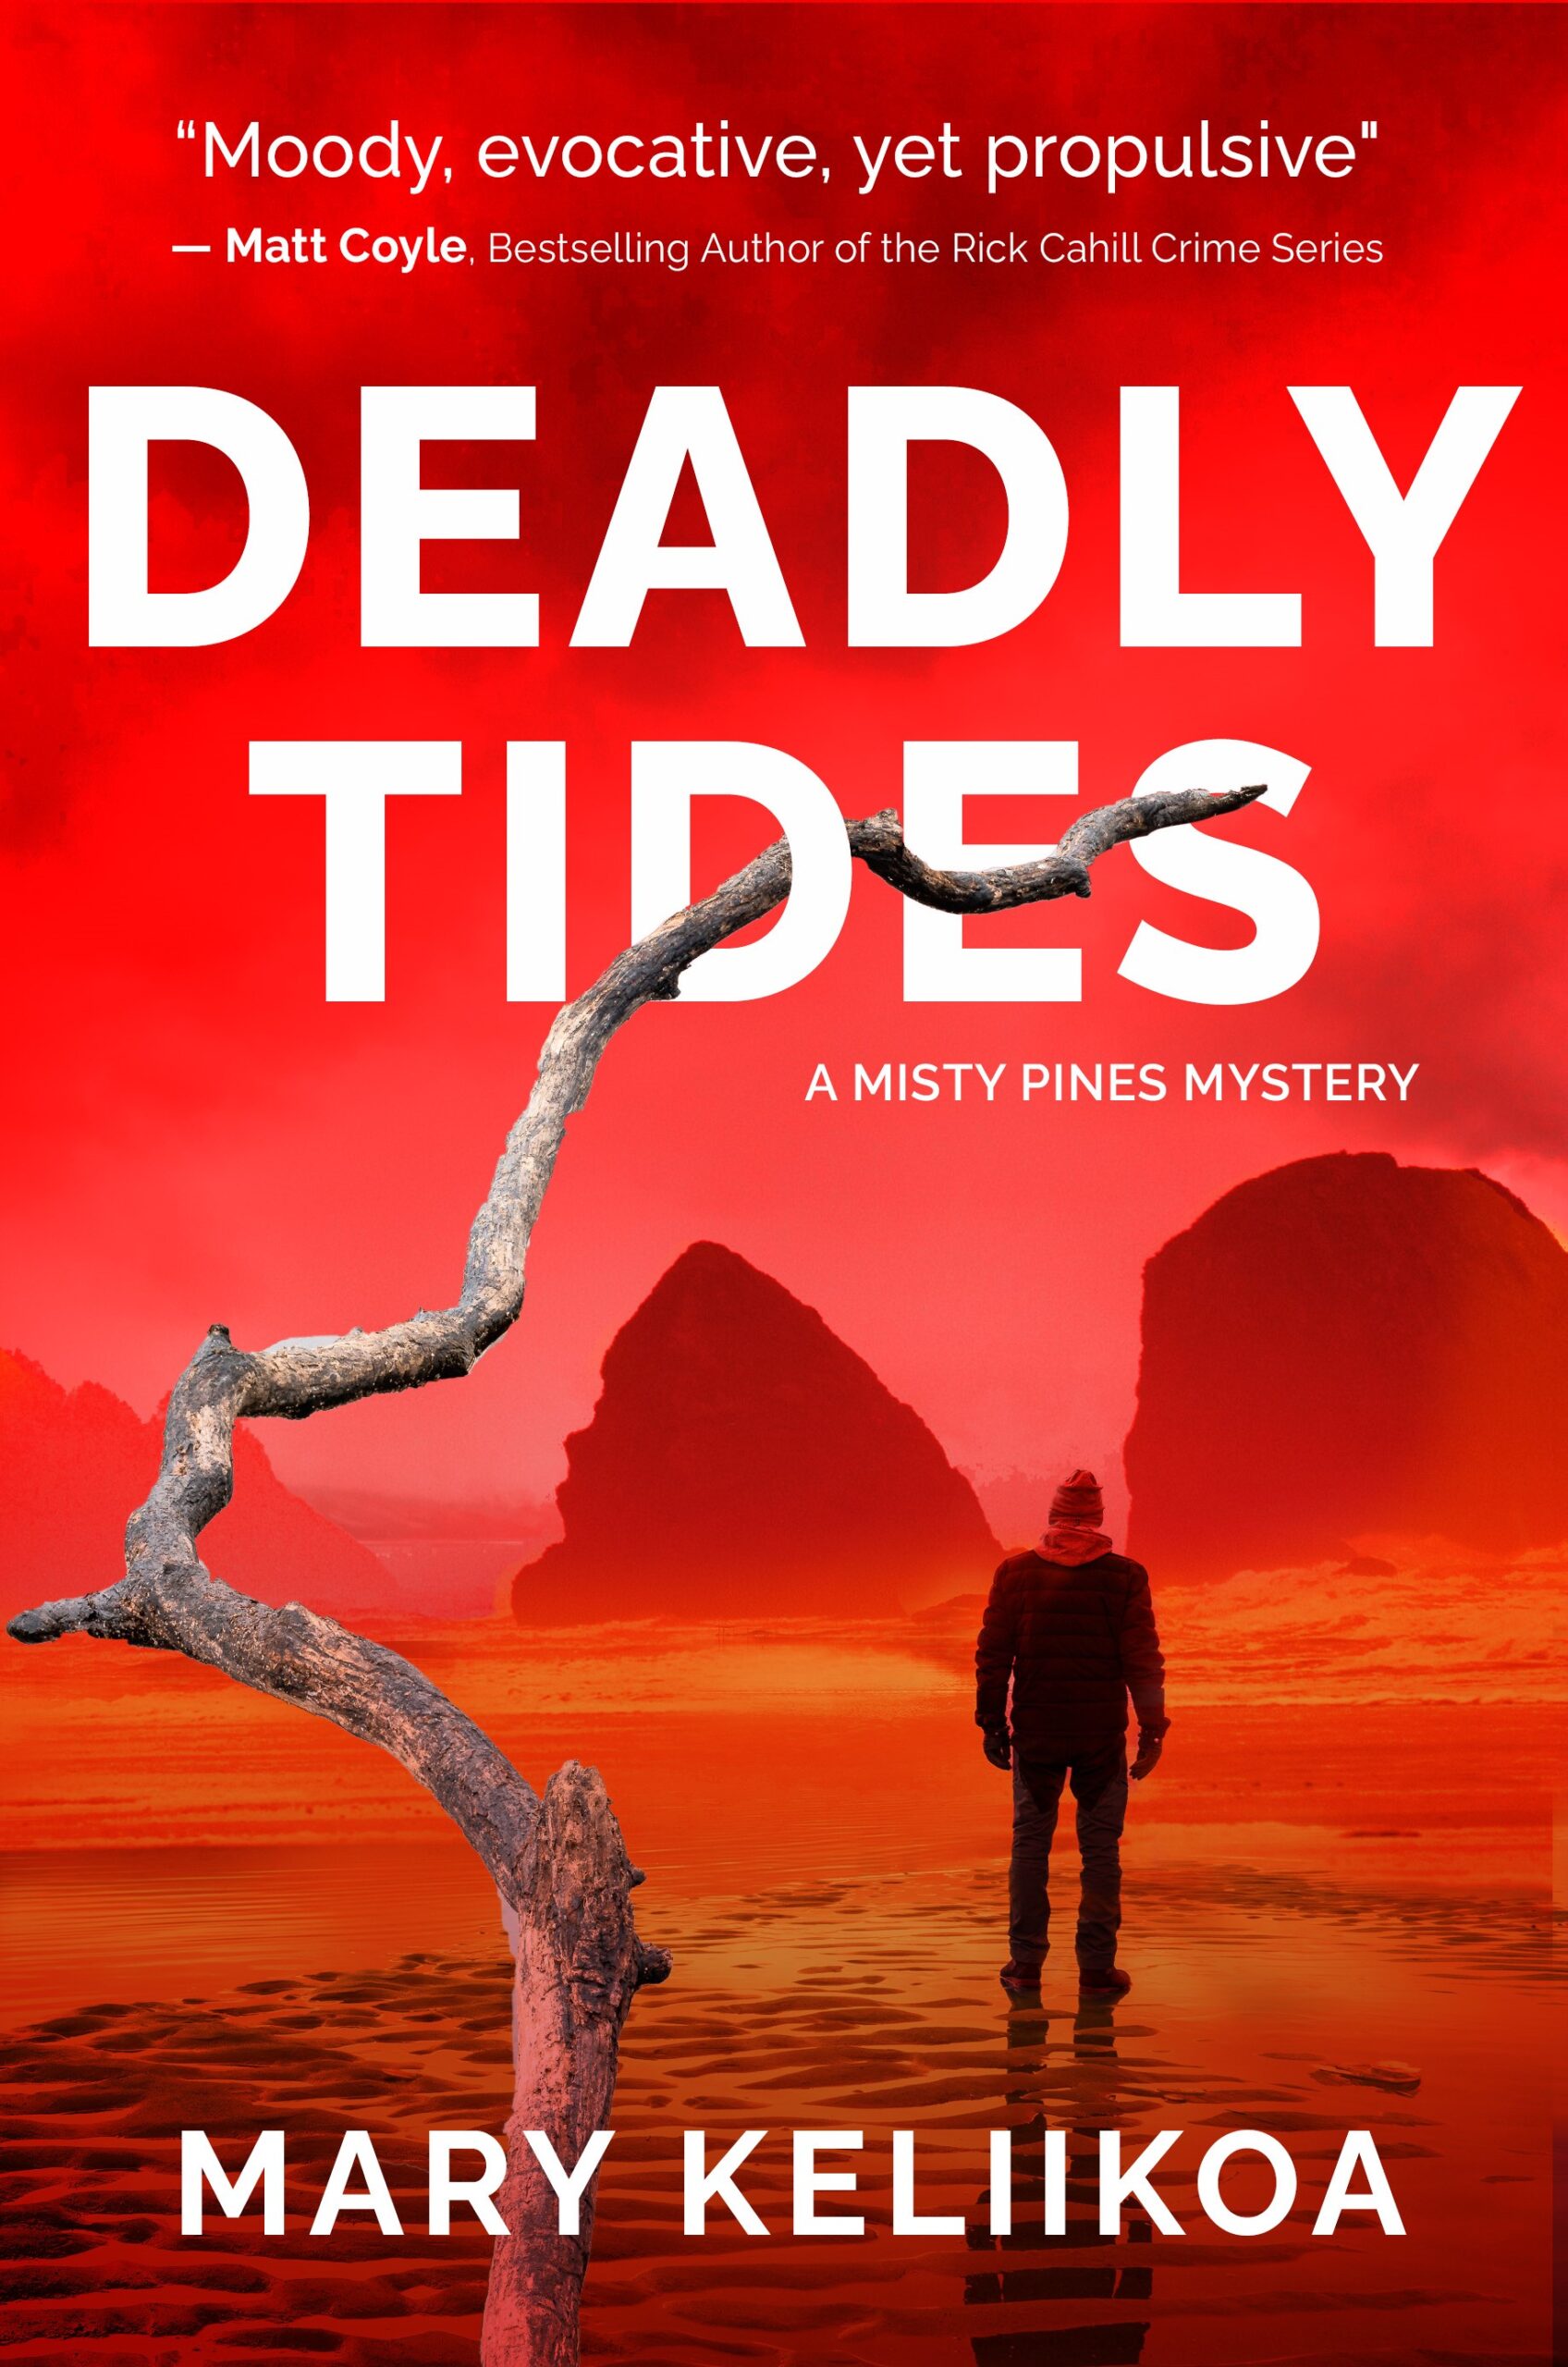 Deadly Tides by Mary Keliikoa